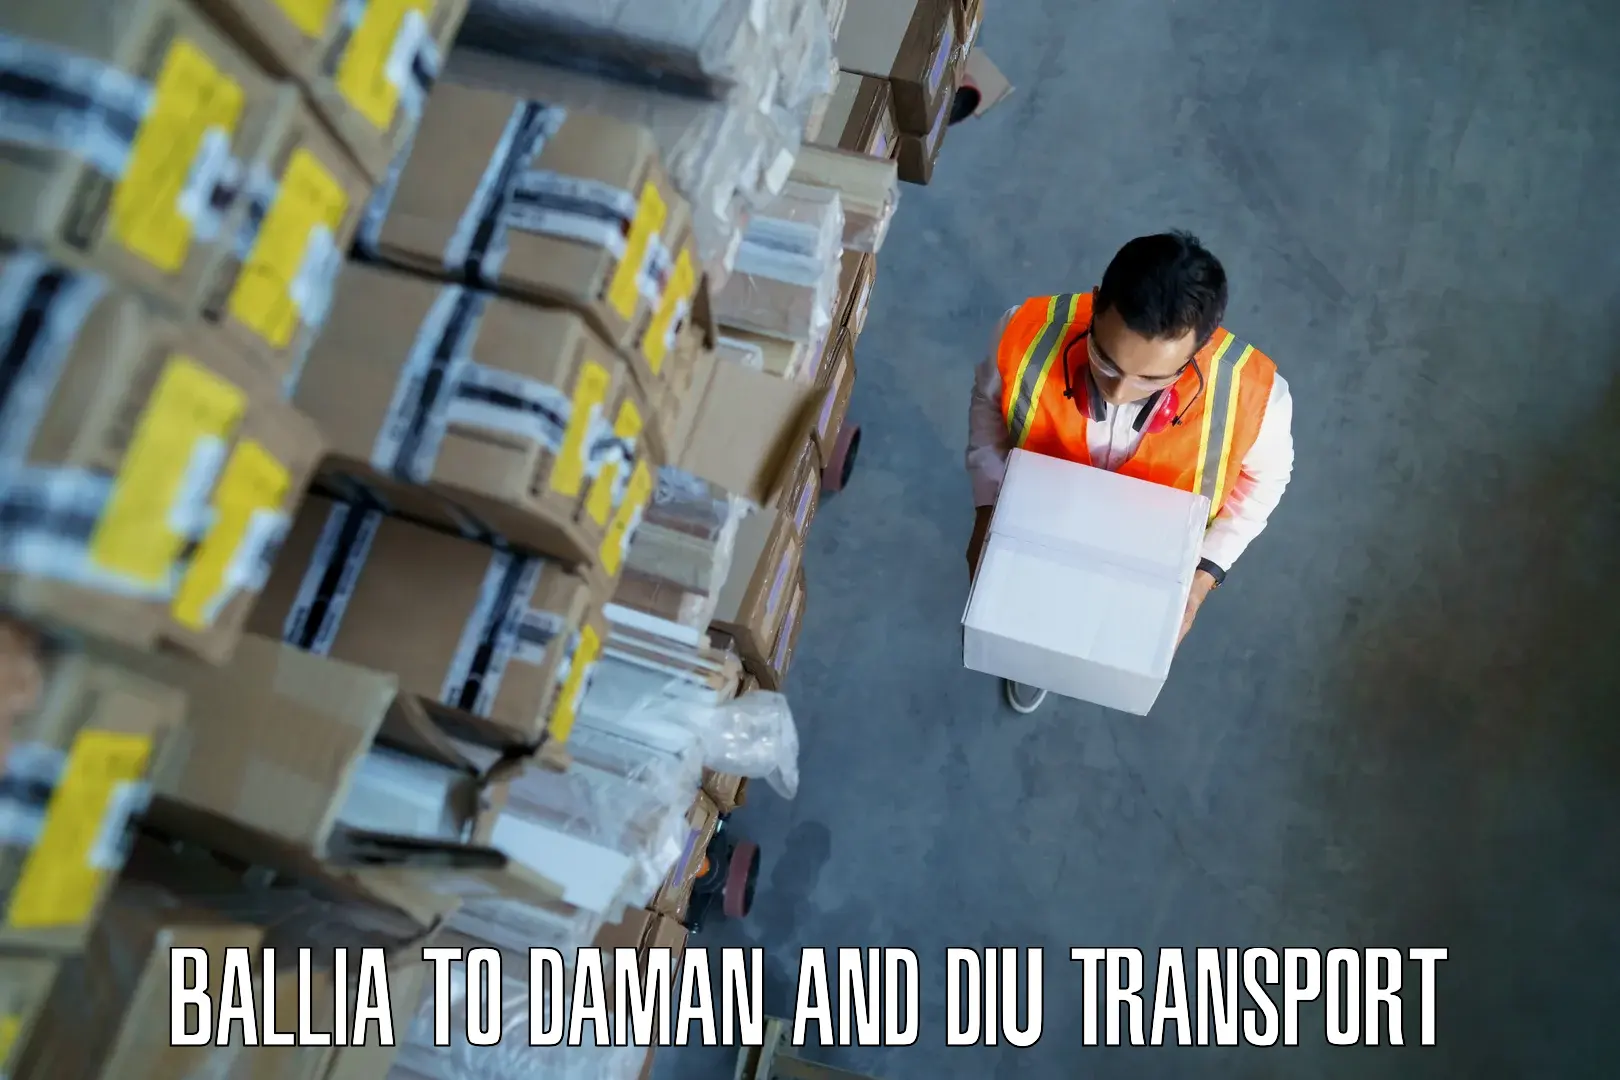 Express transport services Ballia to Daman and Diu